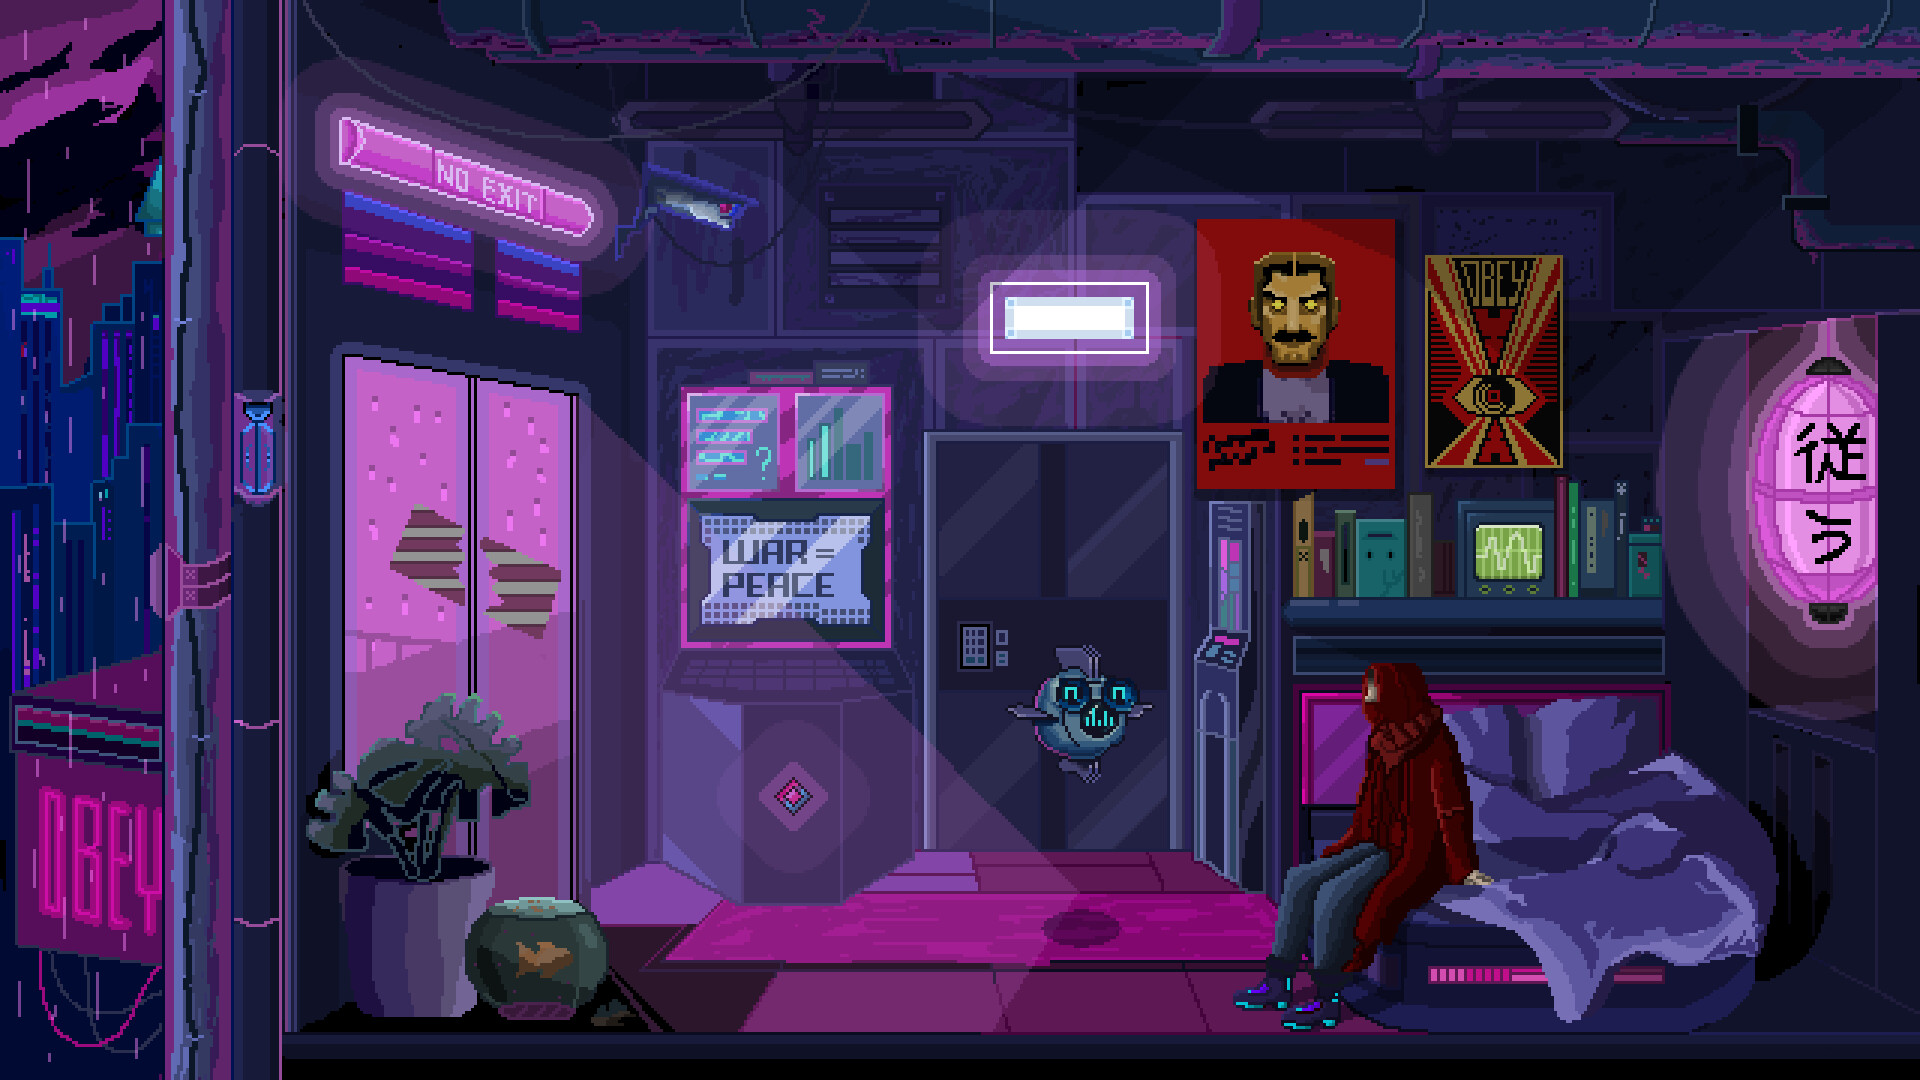 Animated  Pixel art, Animation background, Game background